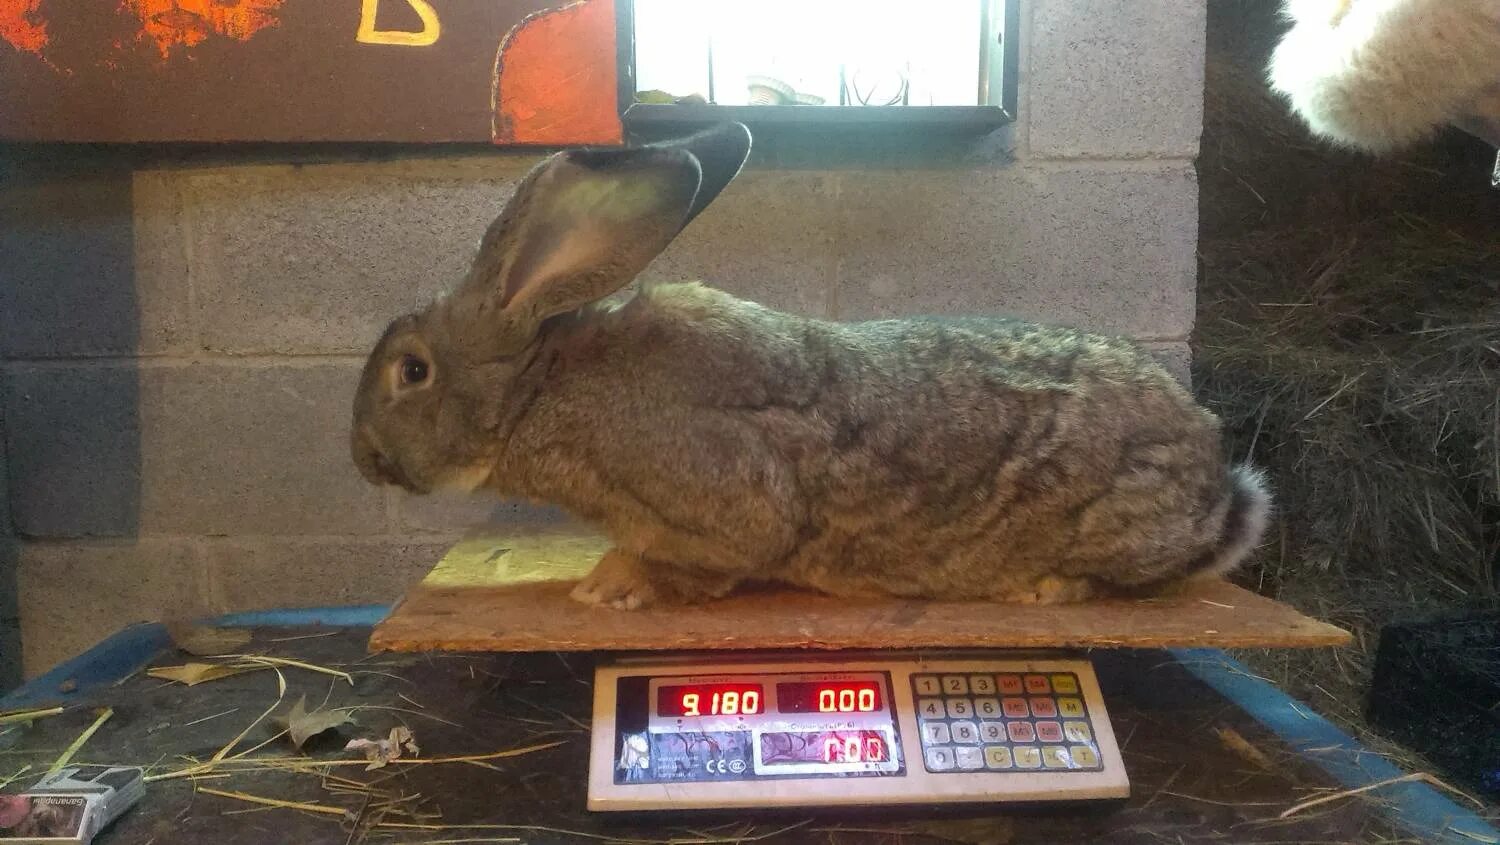 Вес порода кроликов. Порода кроликов Фландр вес. Бельгийский великан кролик вес. Кролик Фландр великан вес. Фламандский гигант кролик.